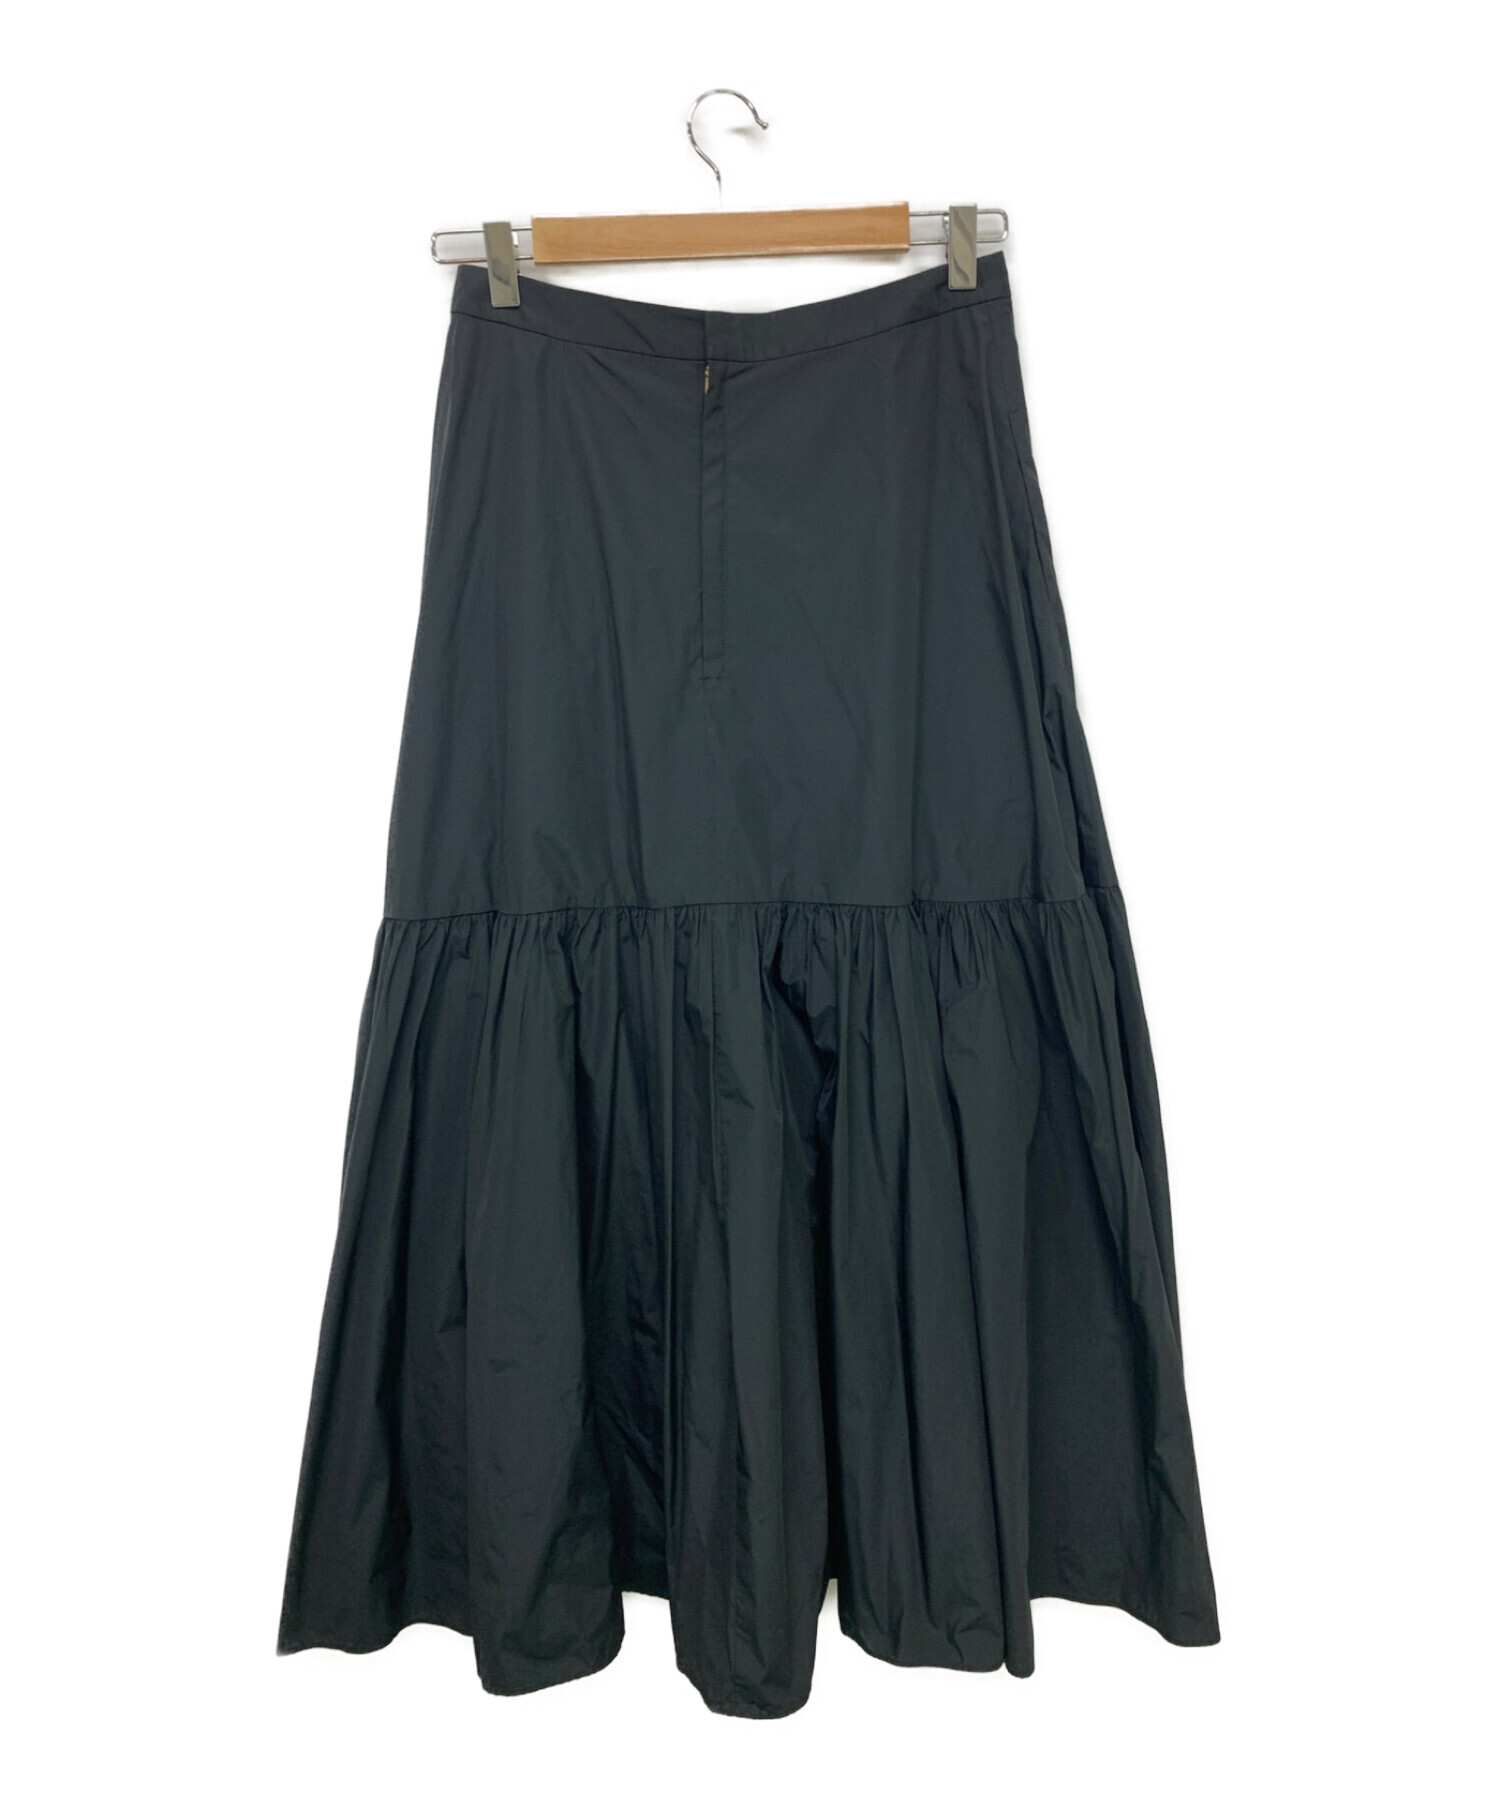 新品タグ付☆plage Taffeta maxi スカート(ブラック)36サイズ